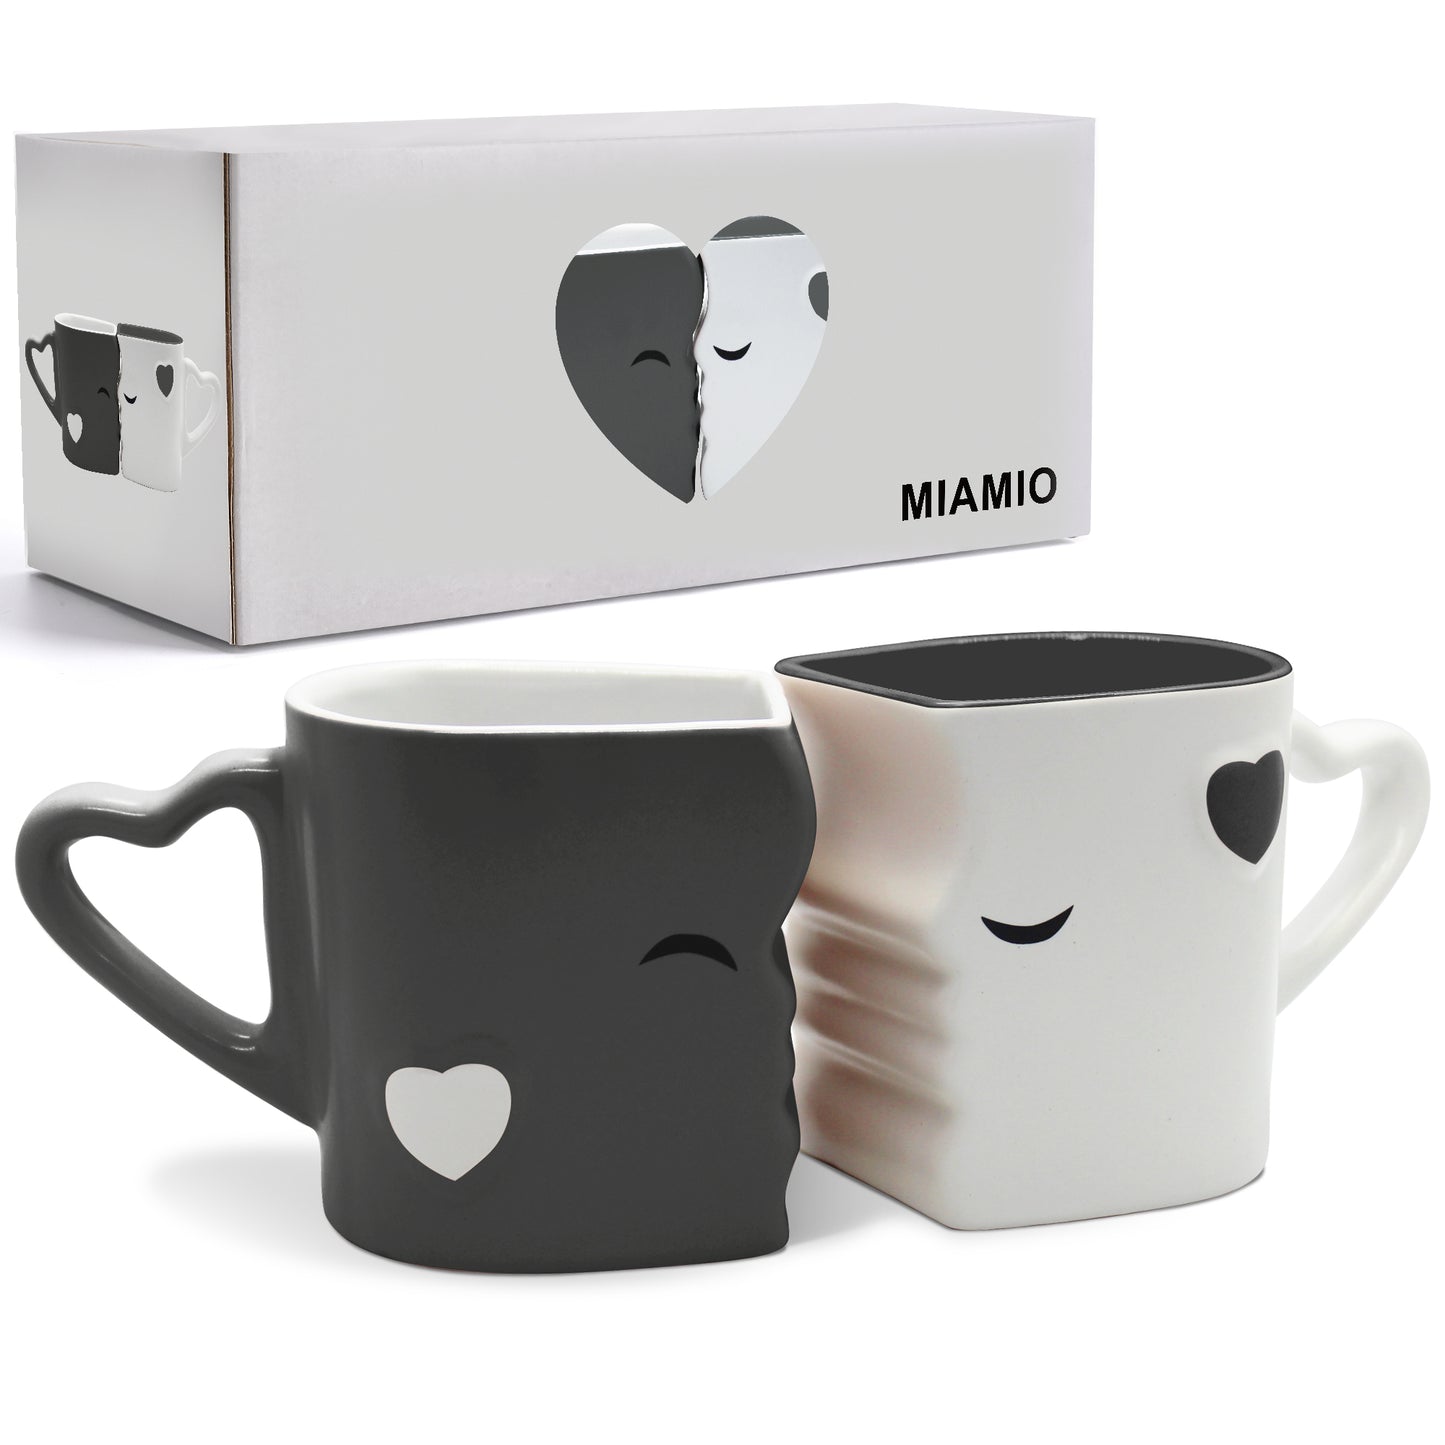 MIAMIO - Kaffeetassen Küssende Tassen Set Geschenk / Weihnachten Freundin Freund